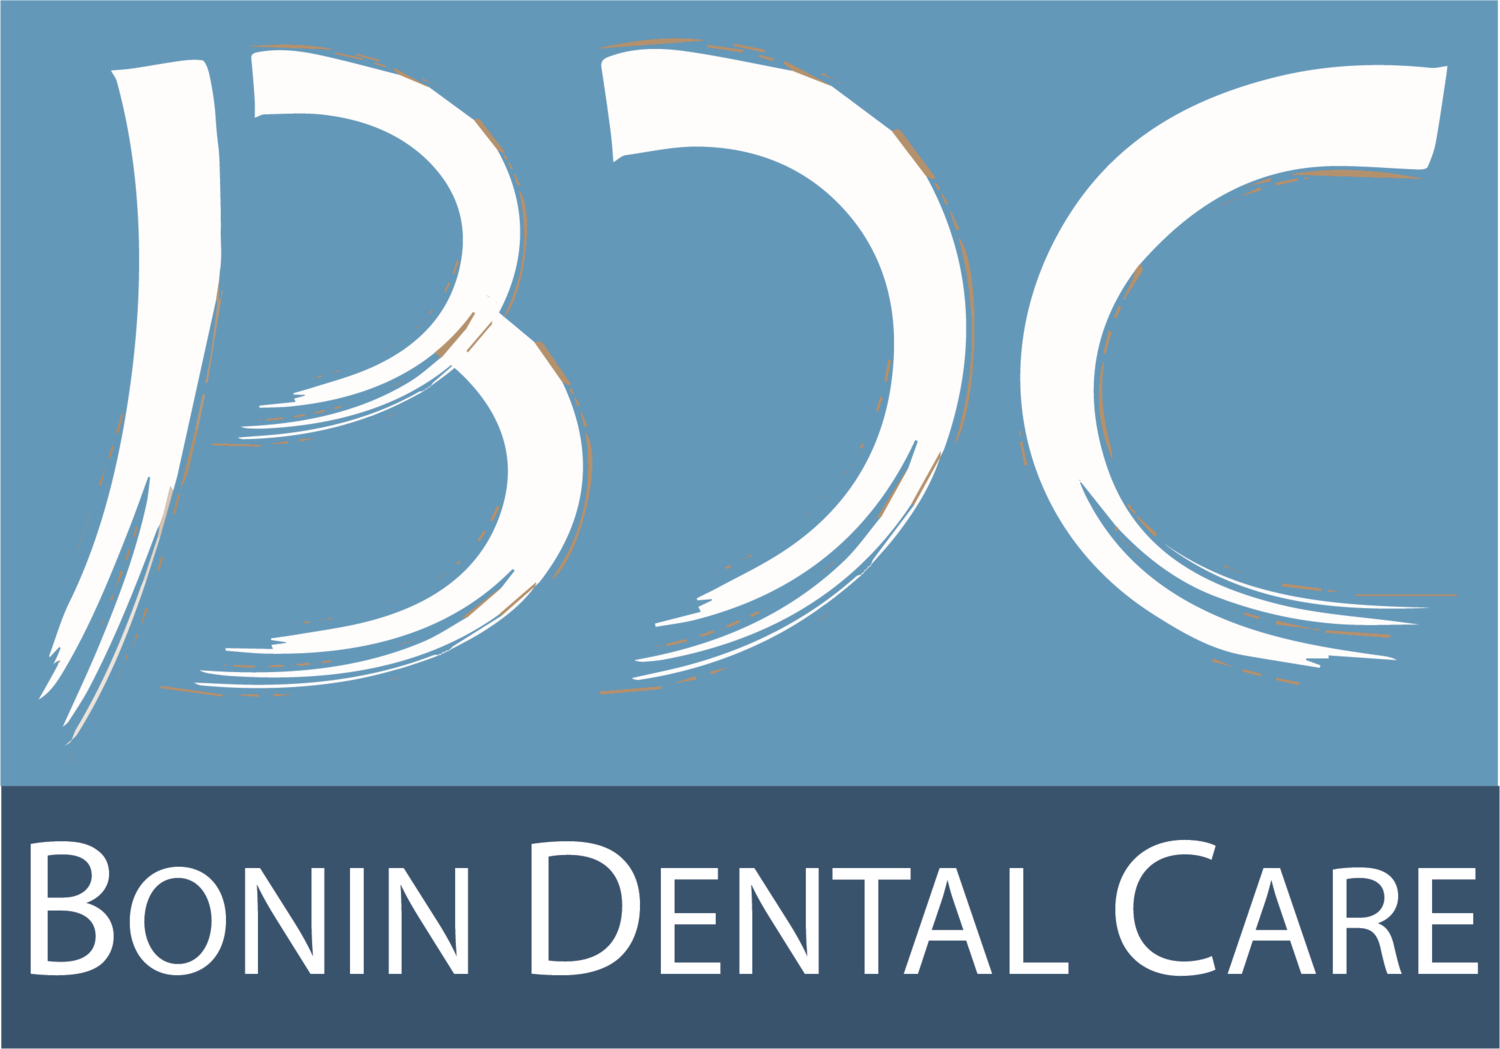 Bonin Dental Care